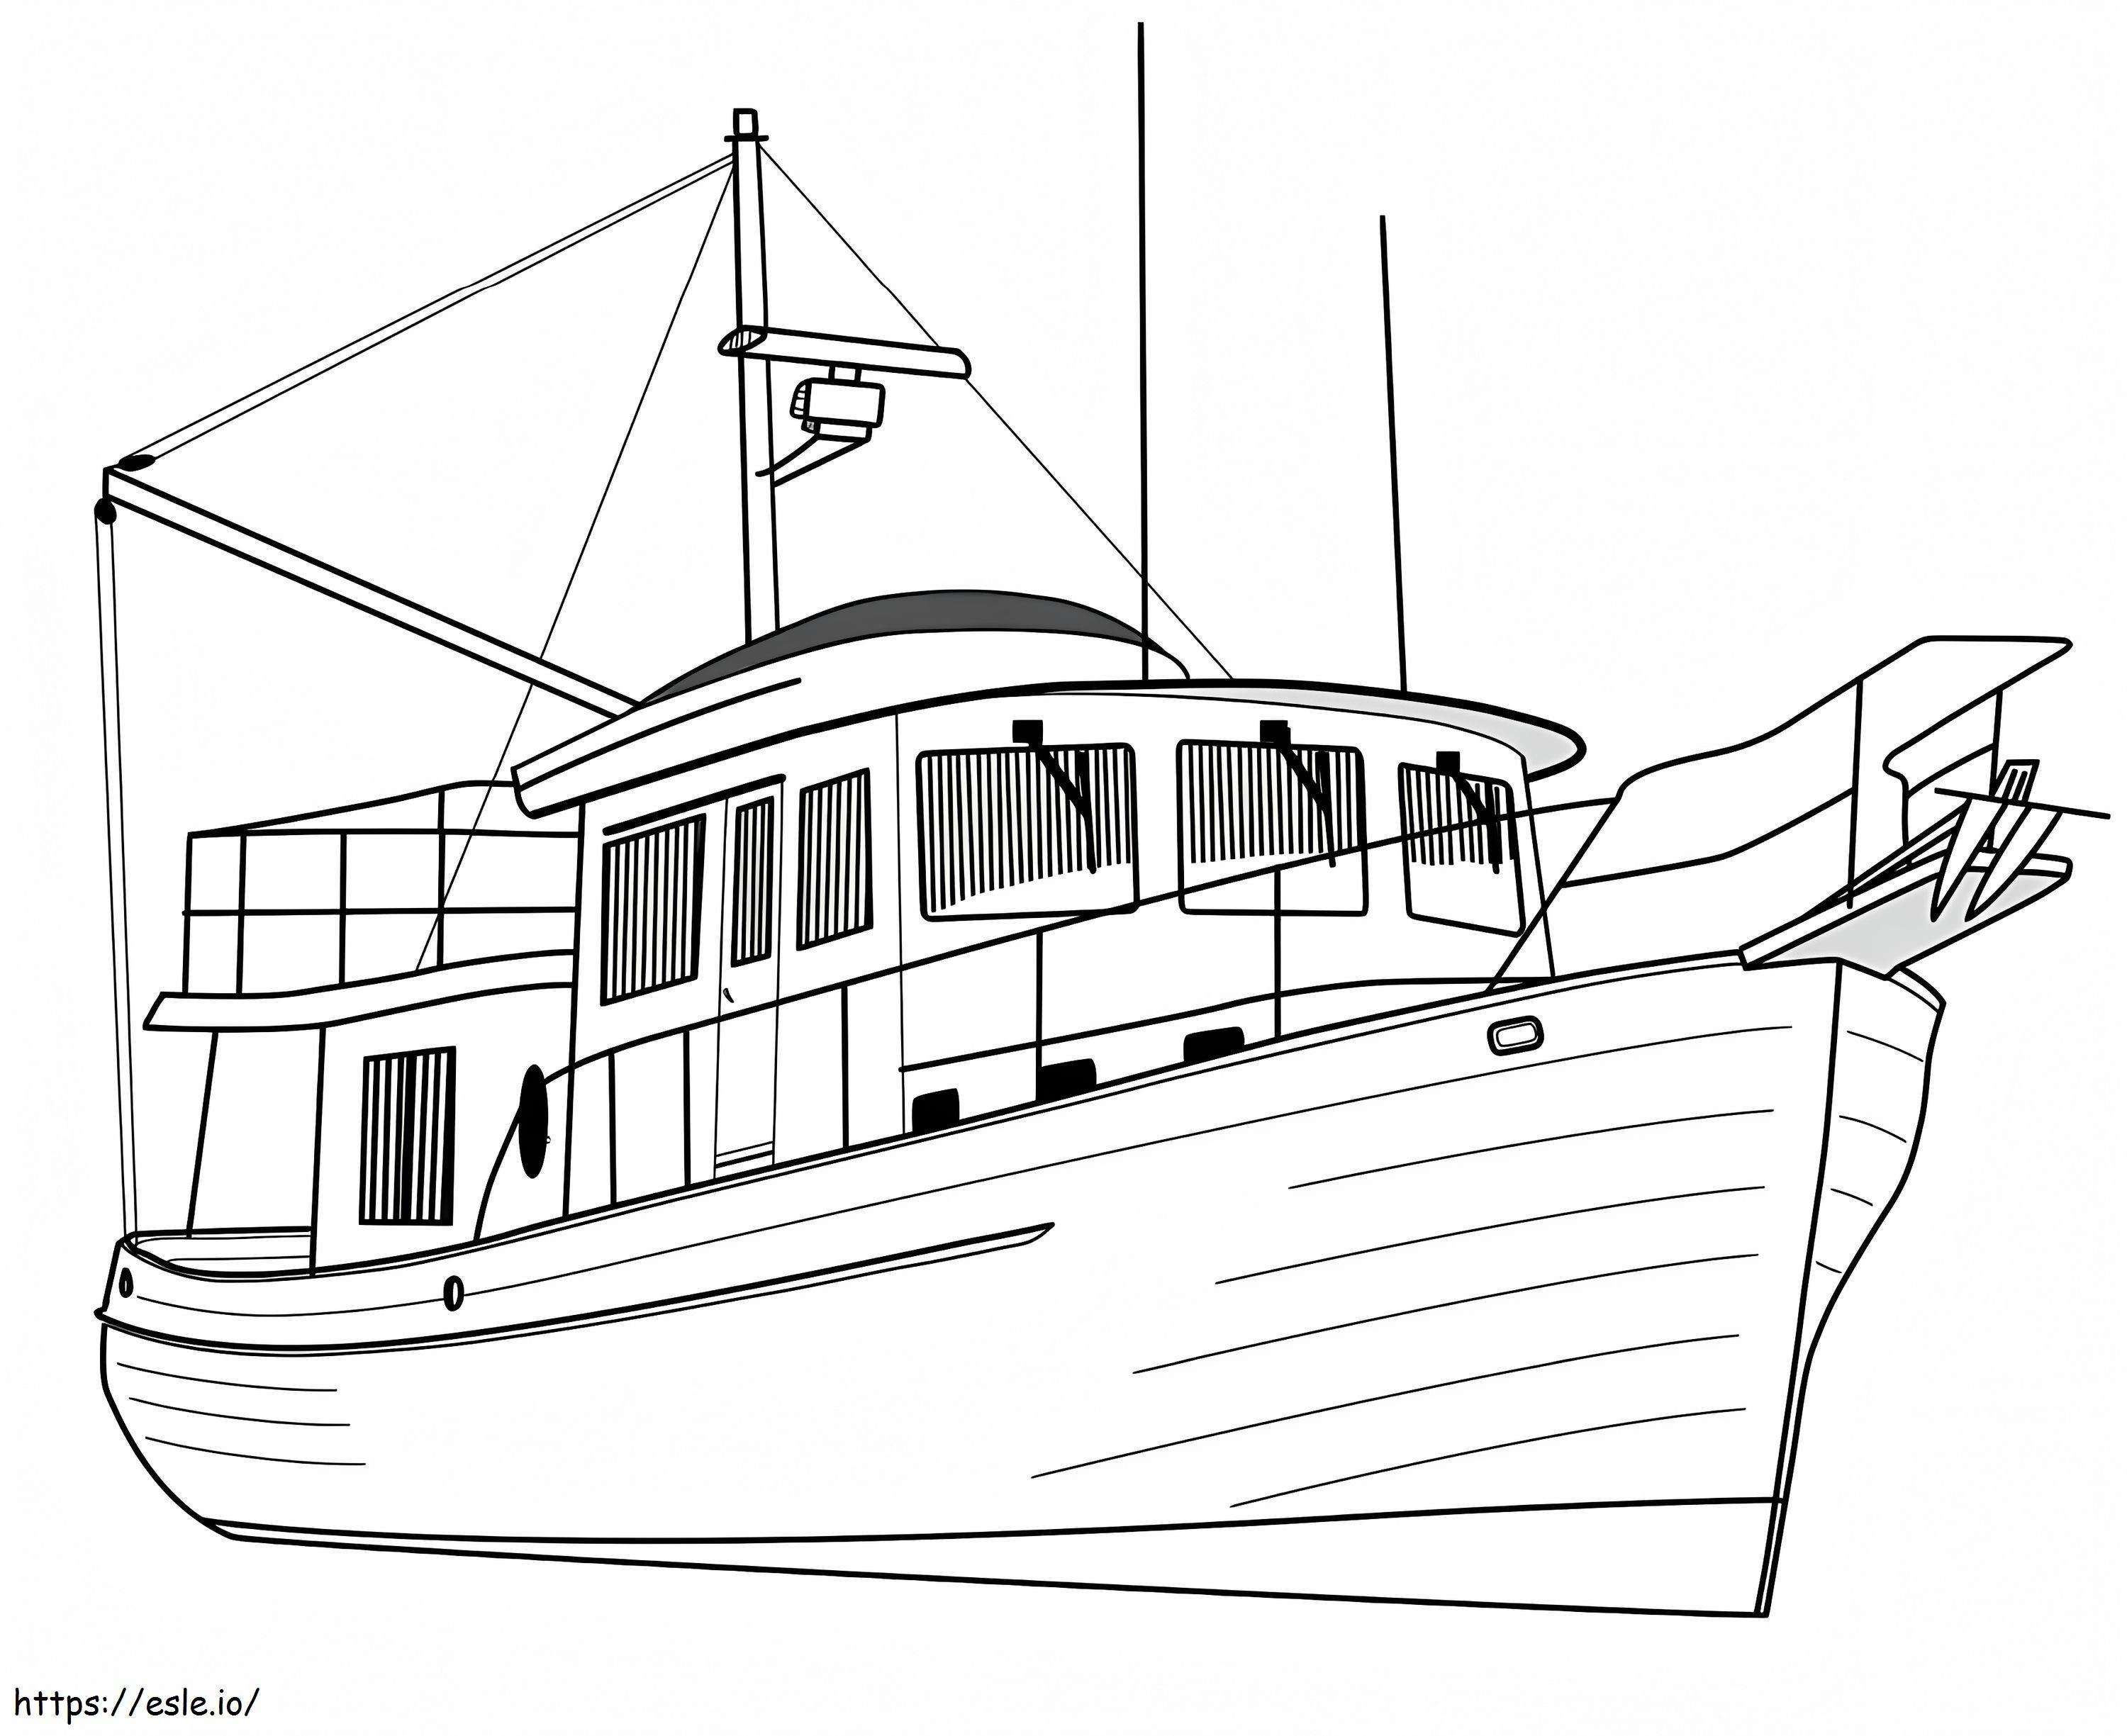  Luxus-Trawler-Yacht A4 ausmalbilder